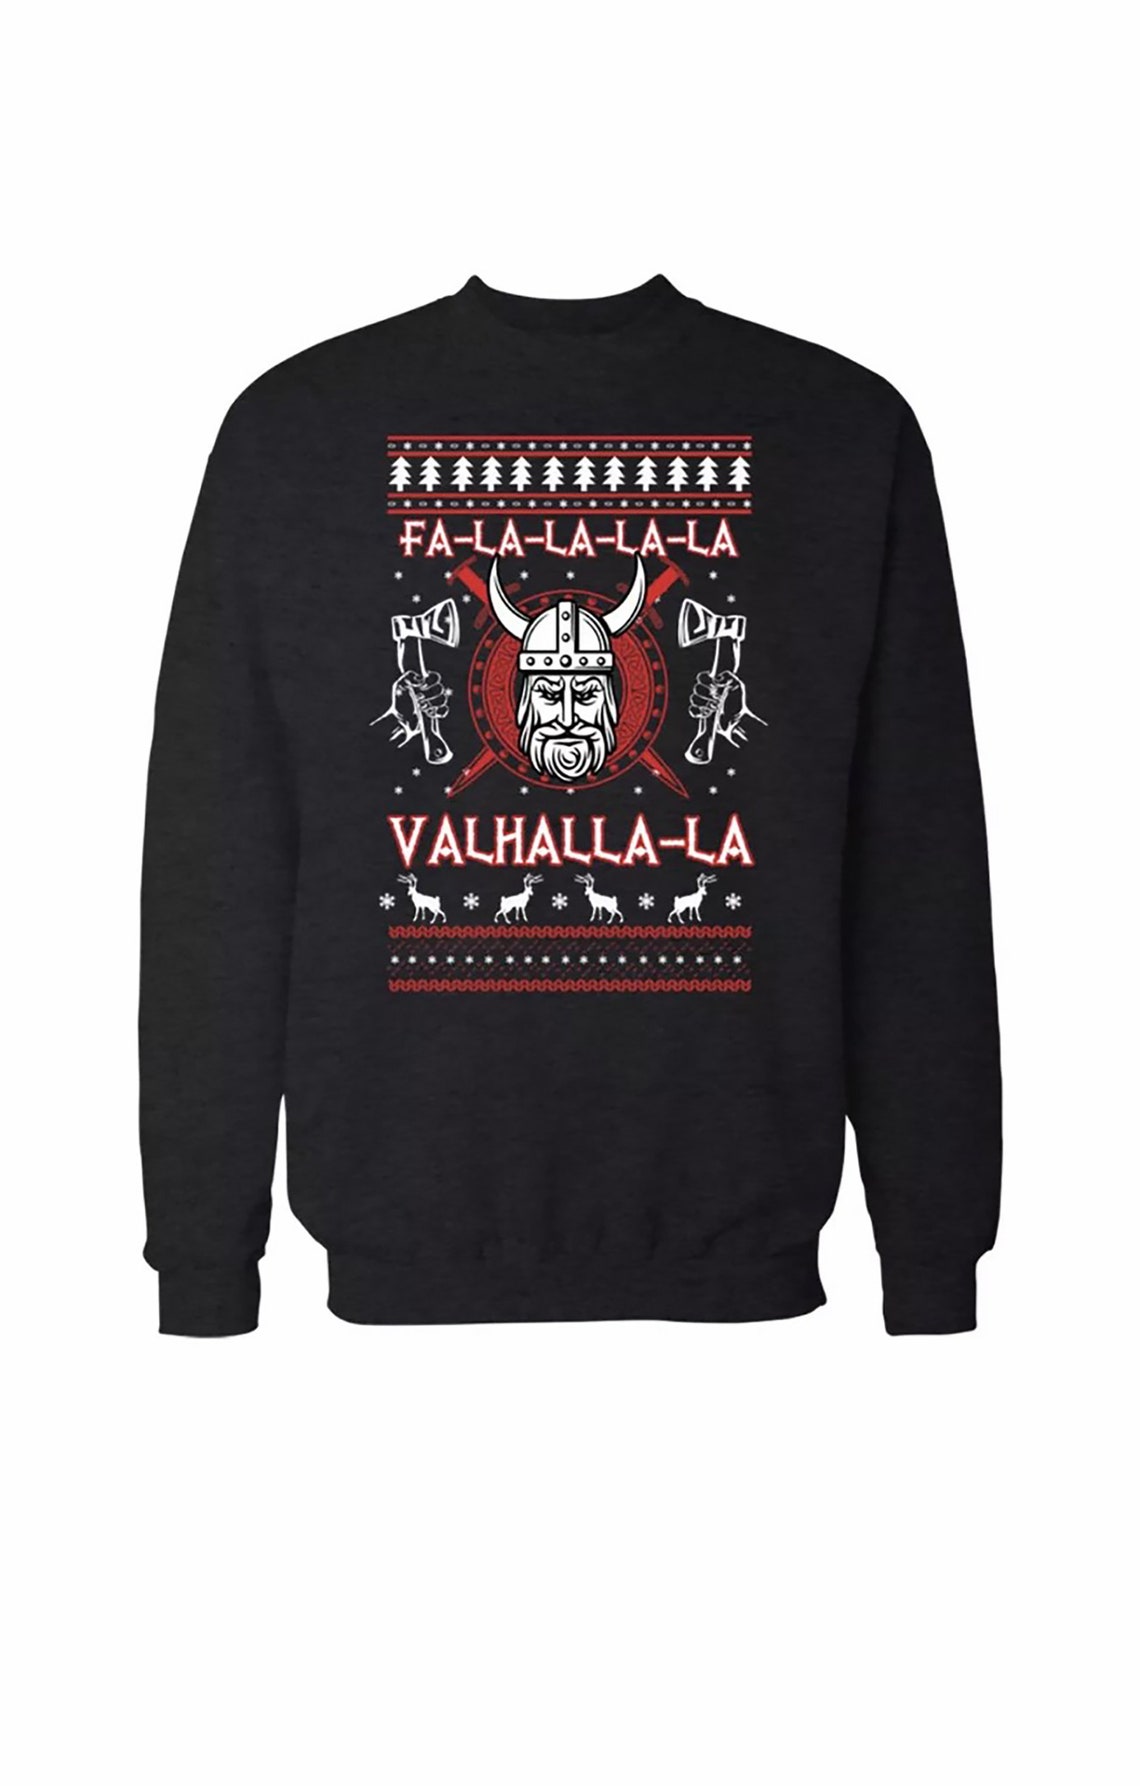 Fa La La La La Valhalla La Christmas Sweatshirt